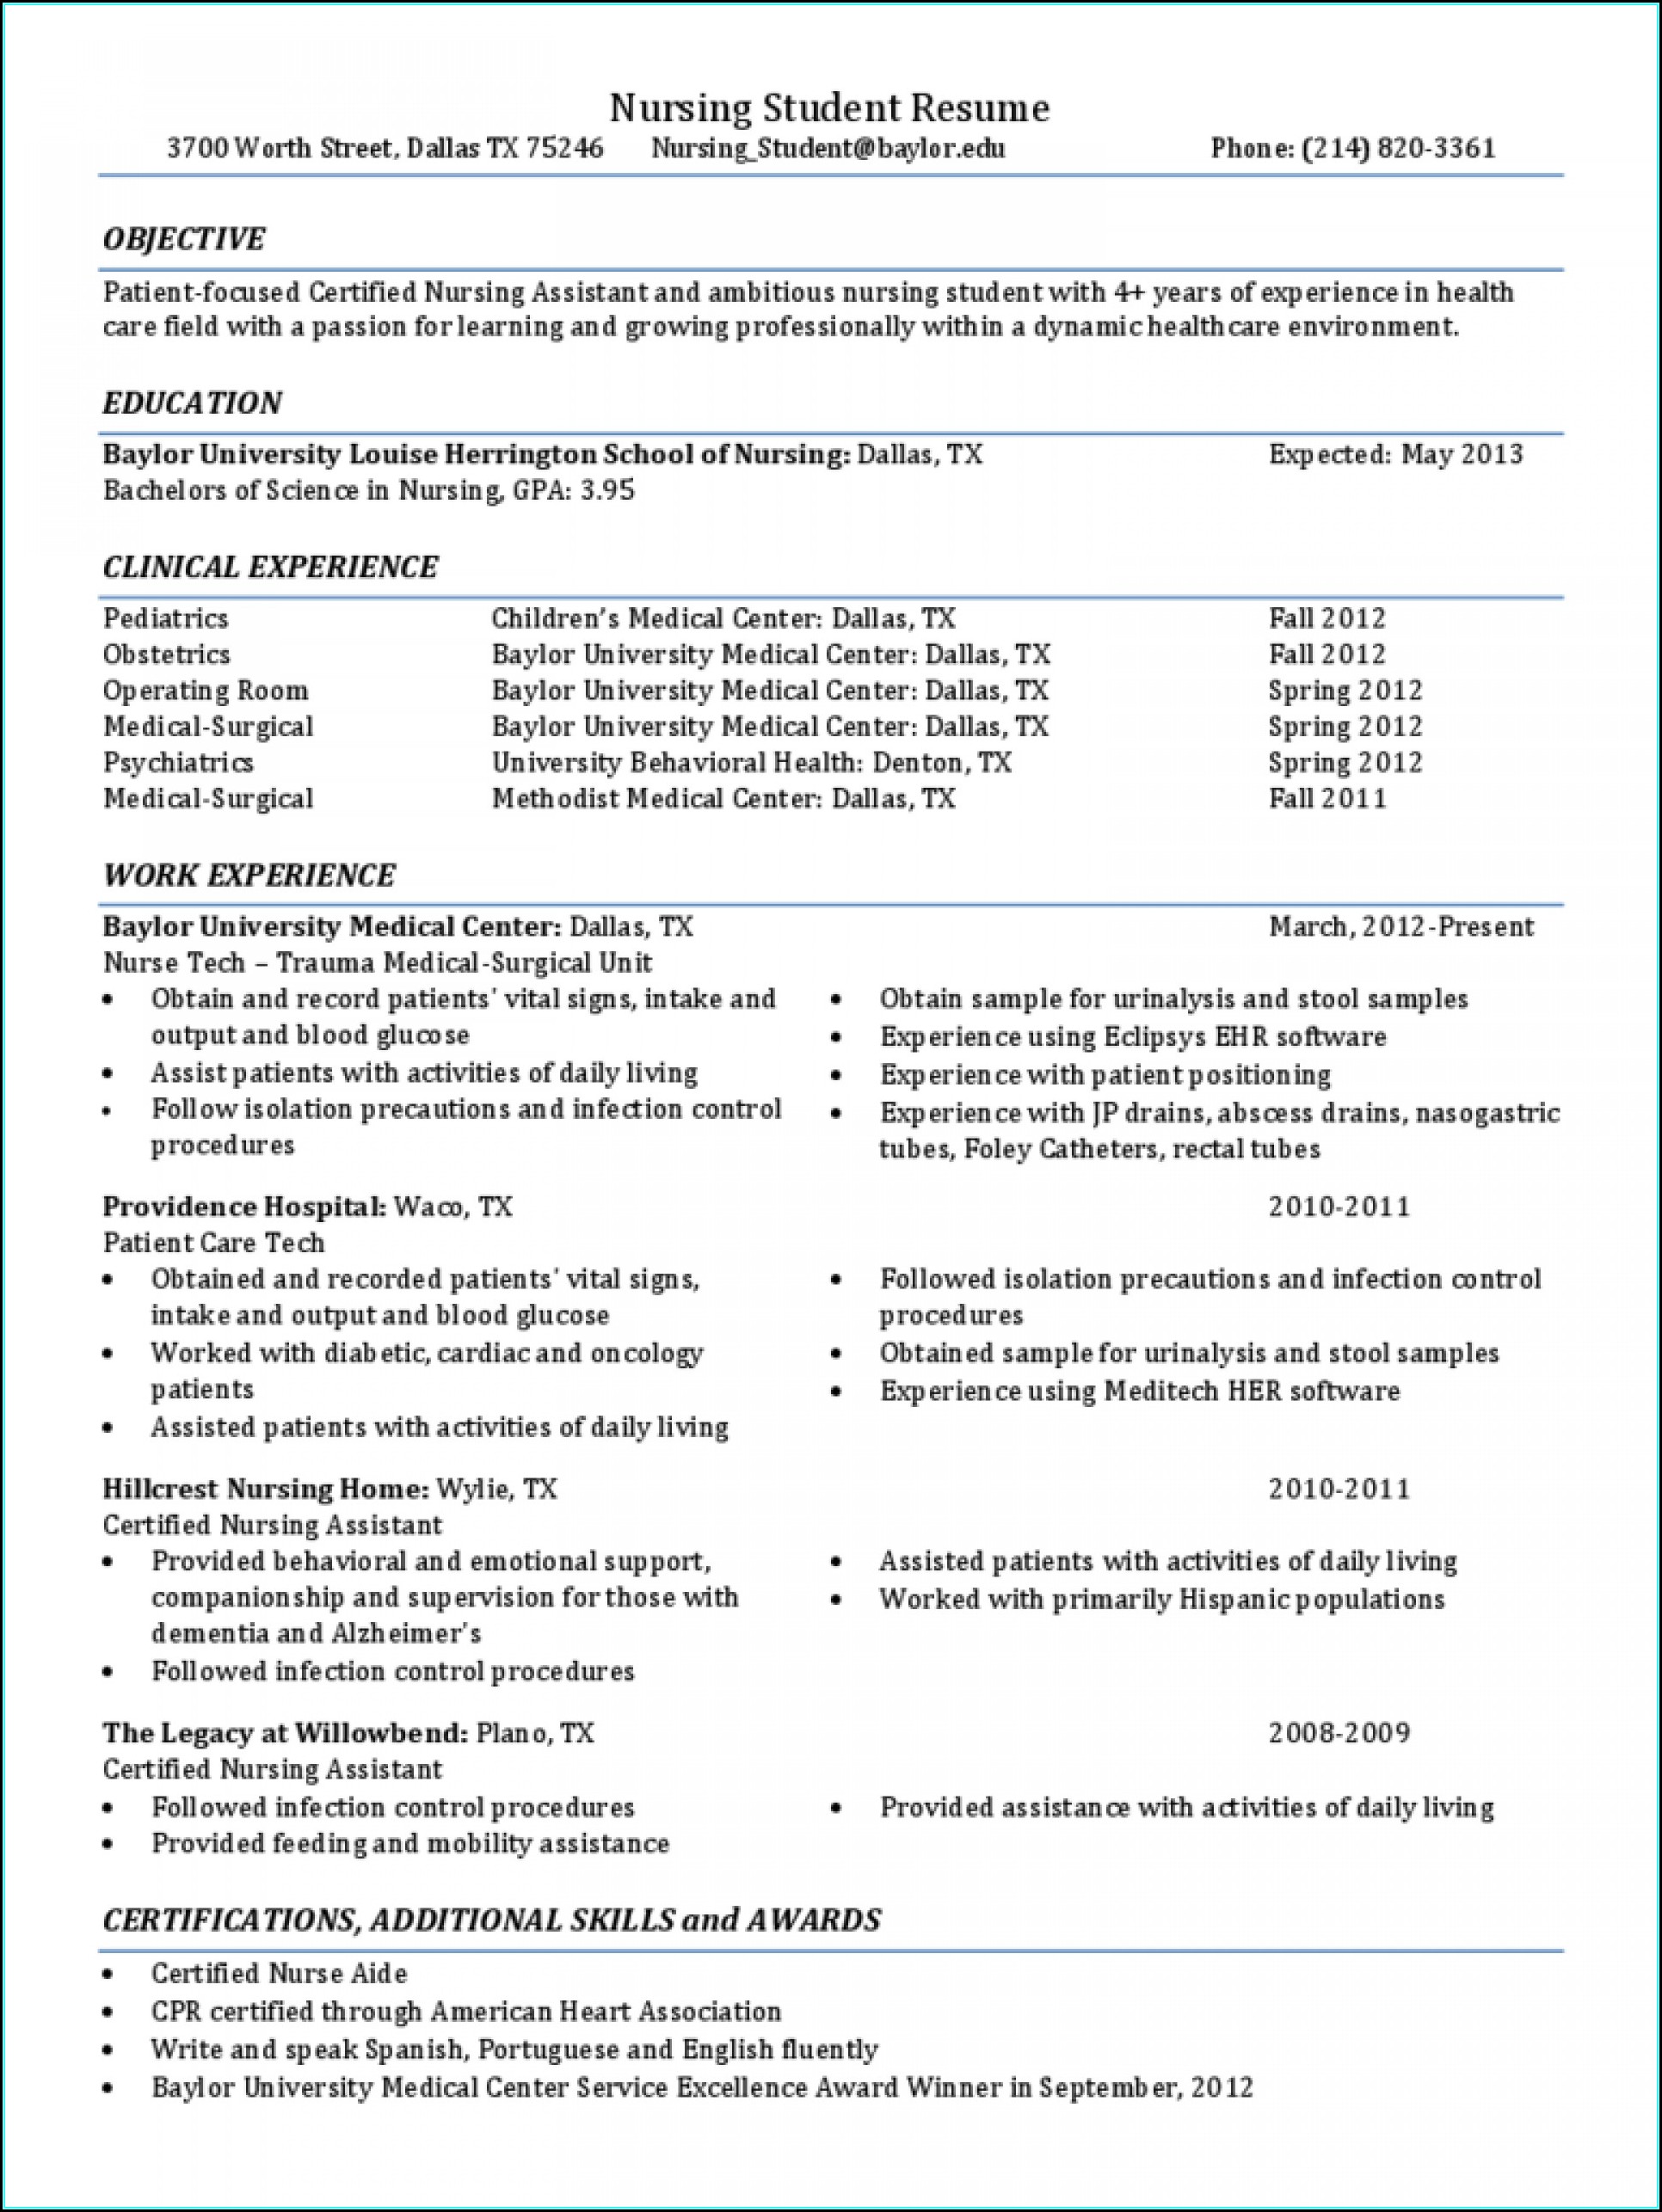 Resume Sample For Nursing Student